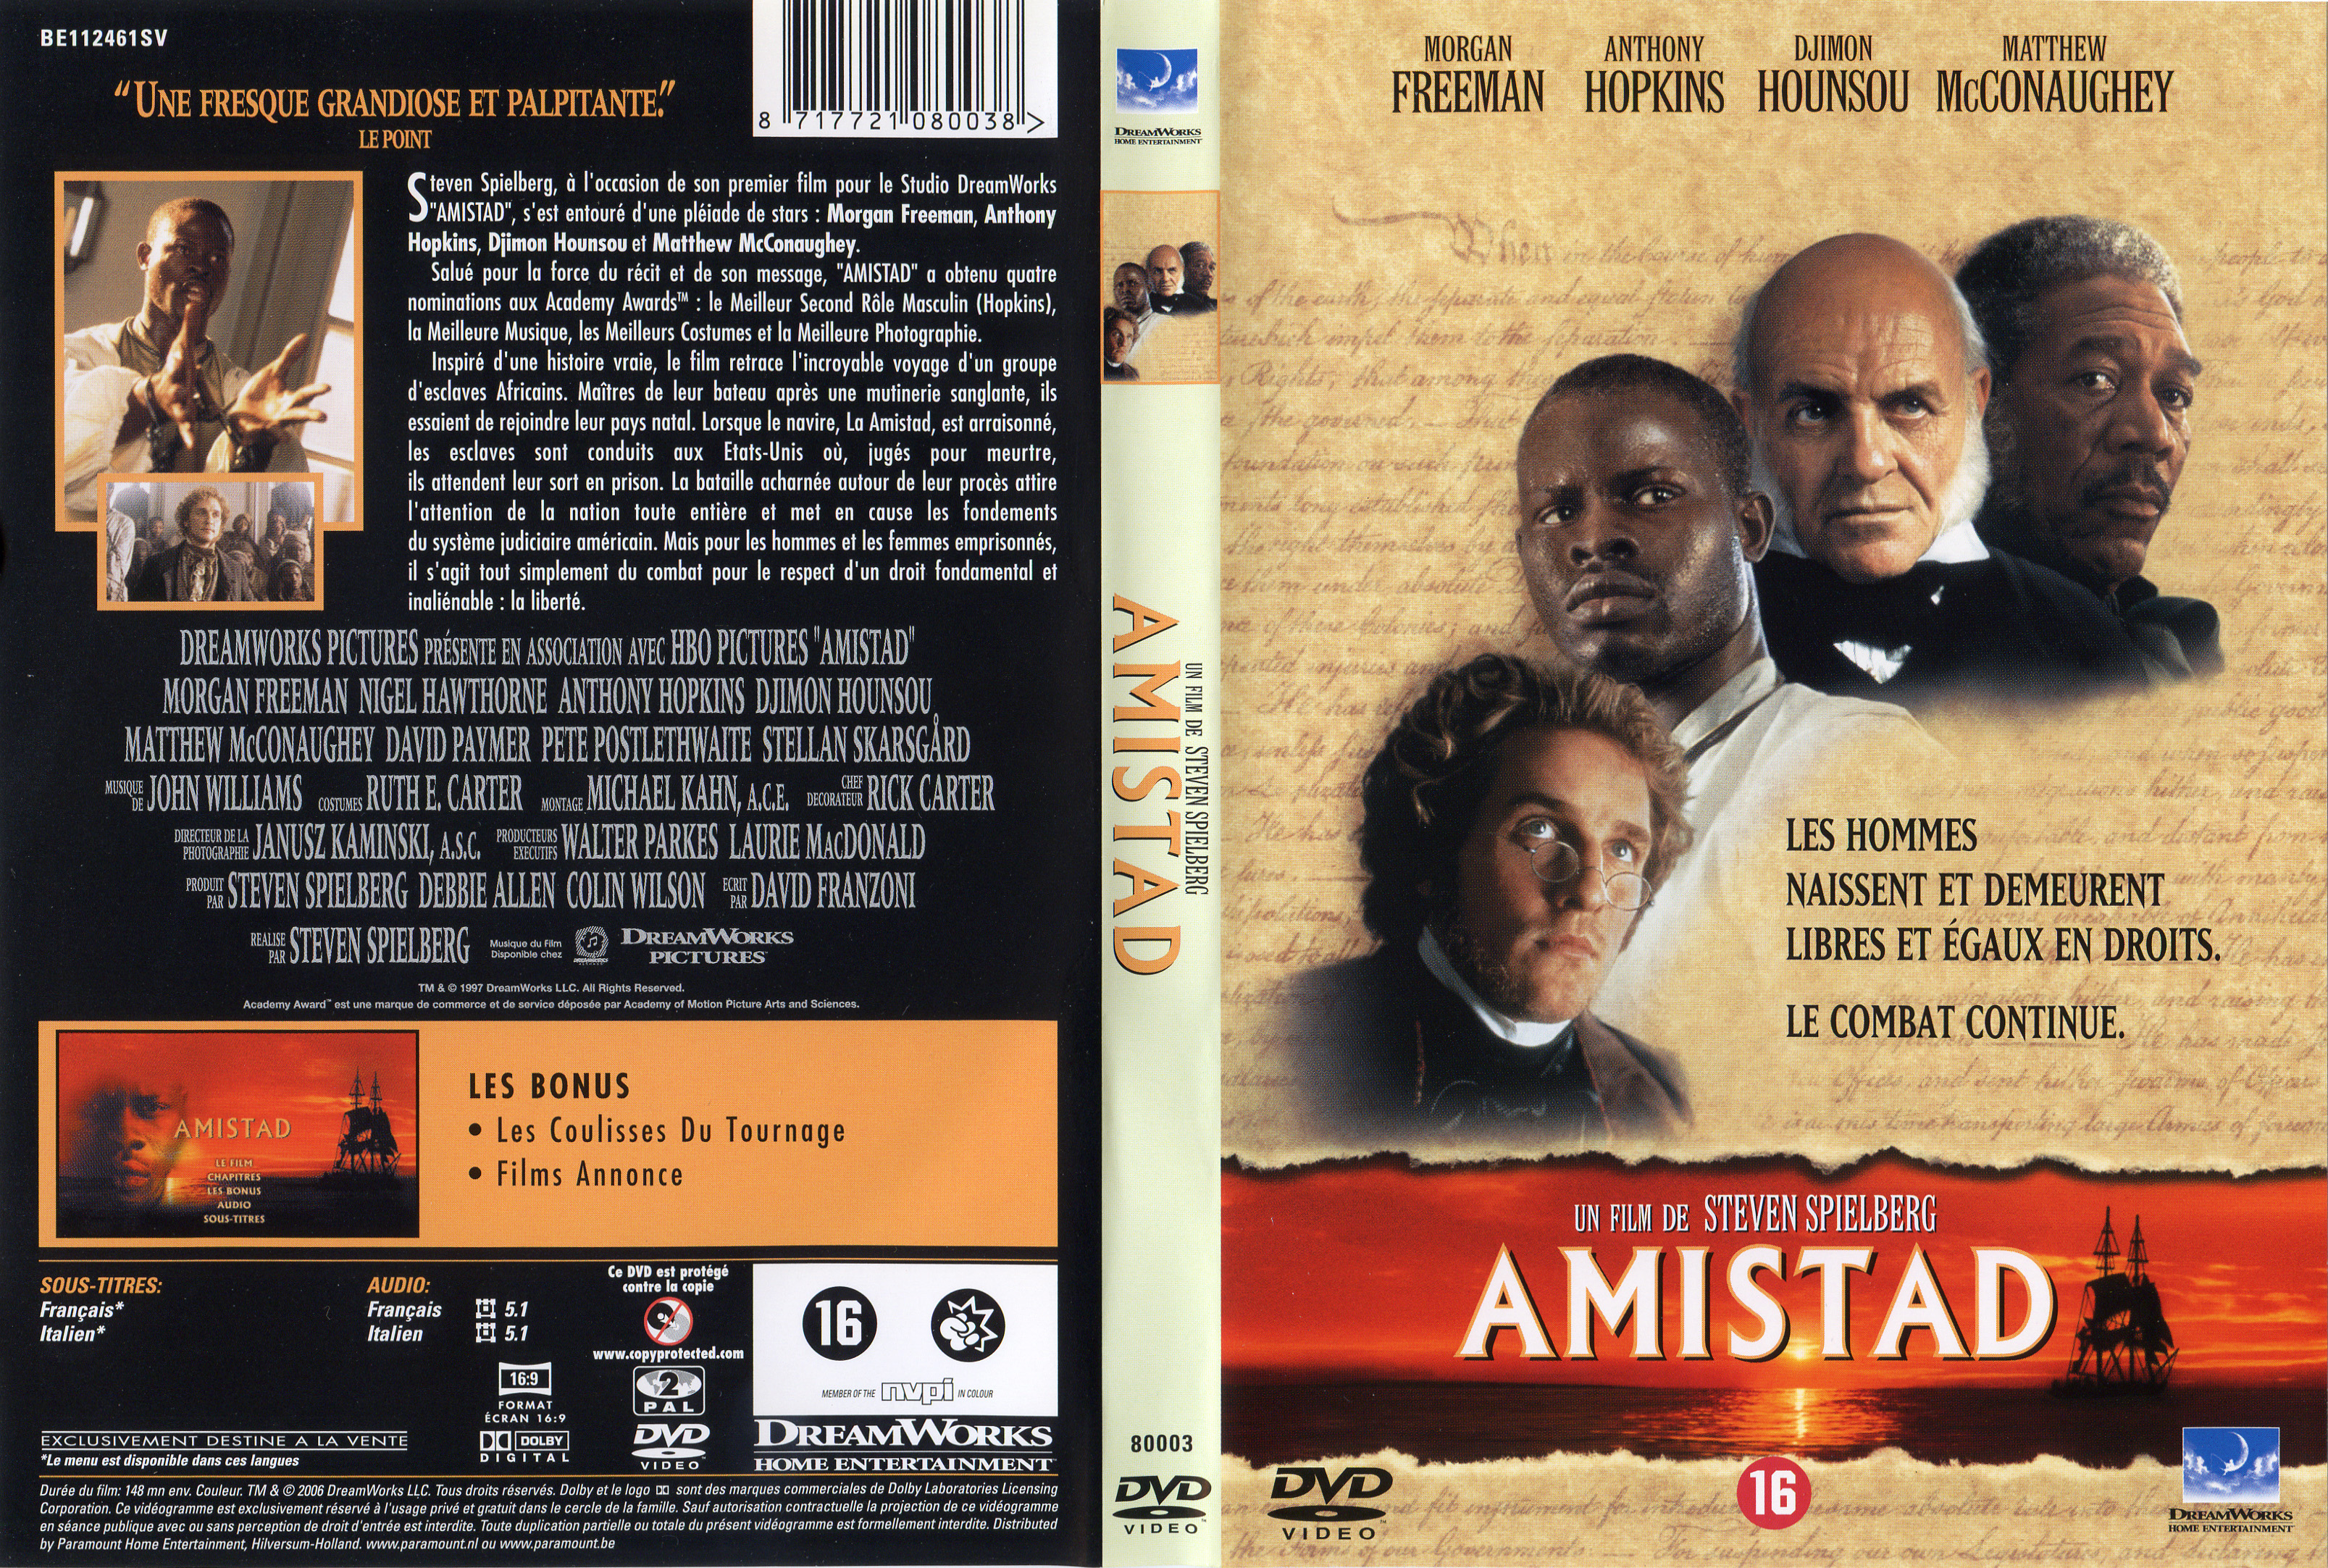 Jaquette DVD Amistad v2